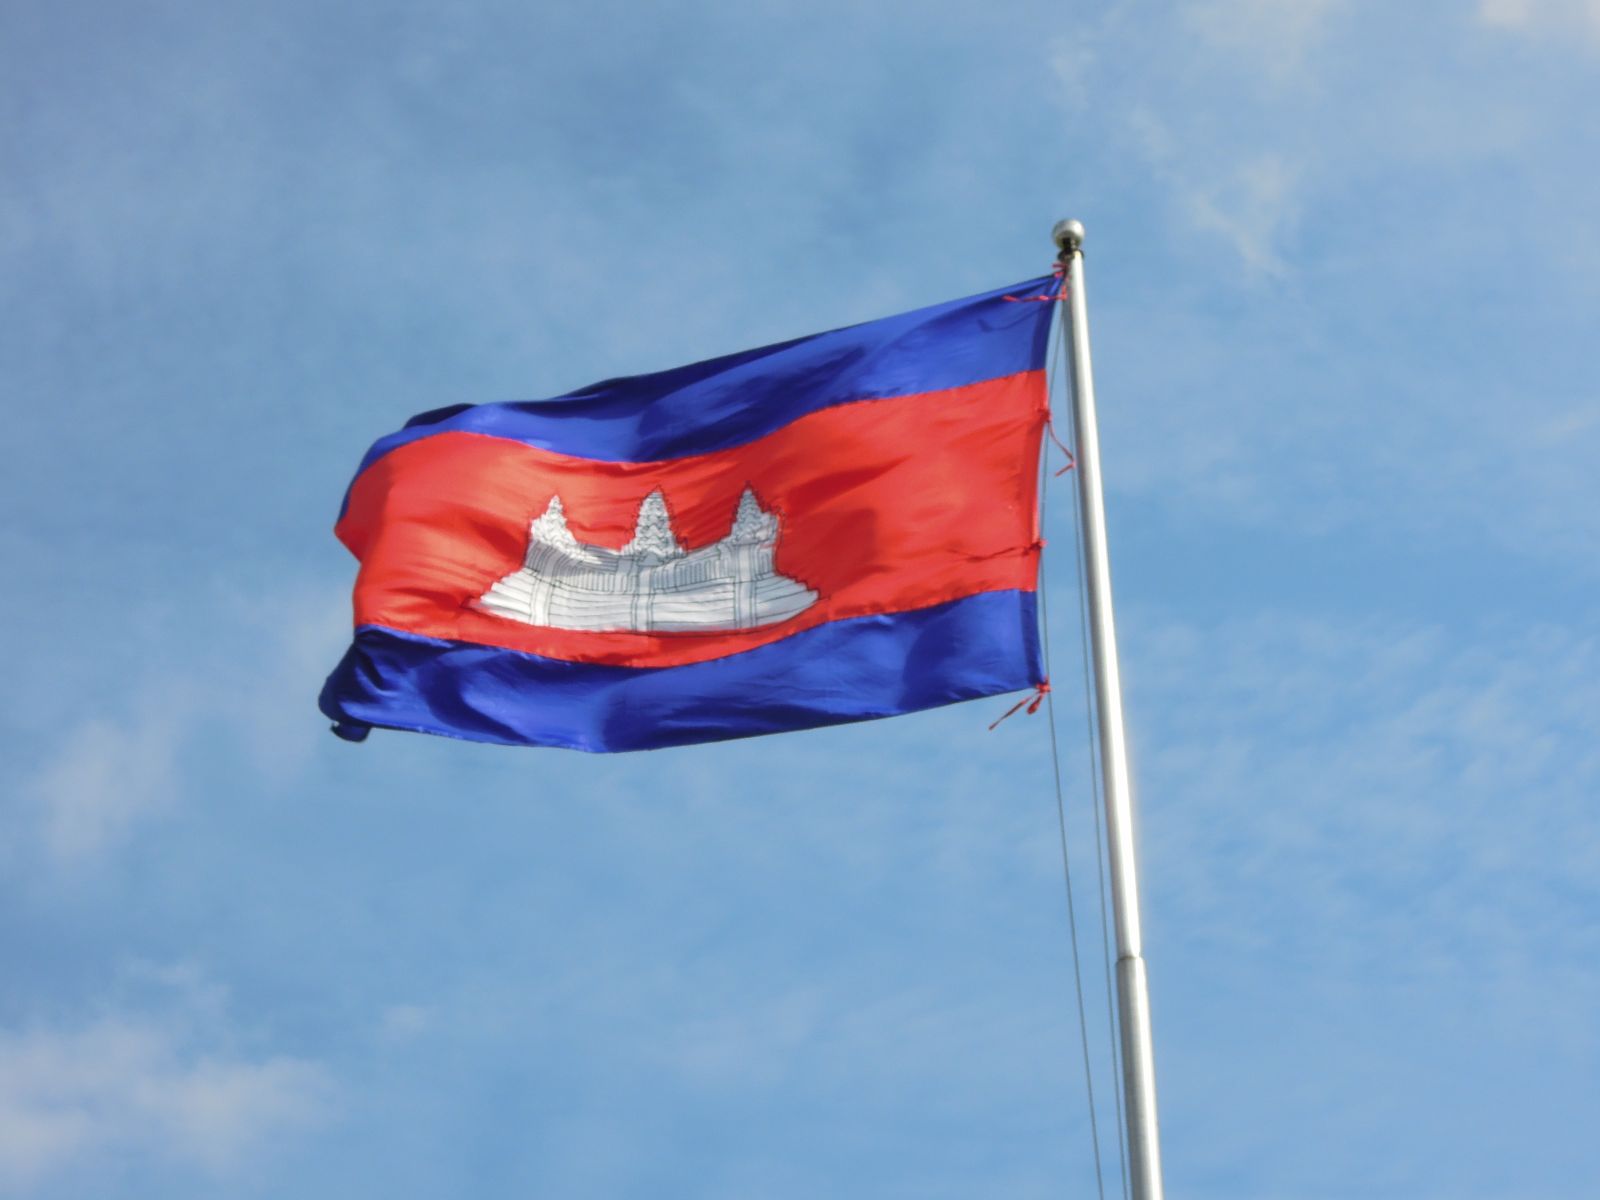 カンボジア 青 赤 白のアンコールワット カンボジア国旗の意味とは Office Seishiron 海外から見た日本の 視点でビジネスを考える